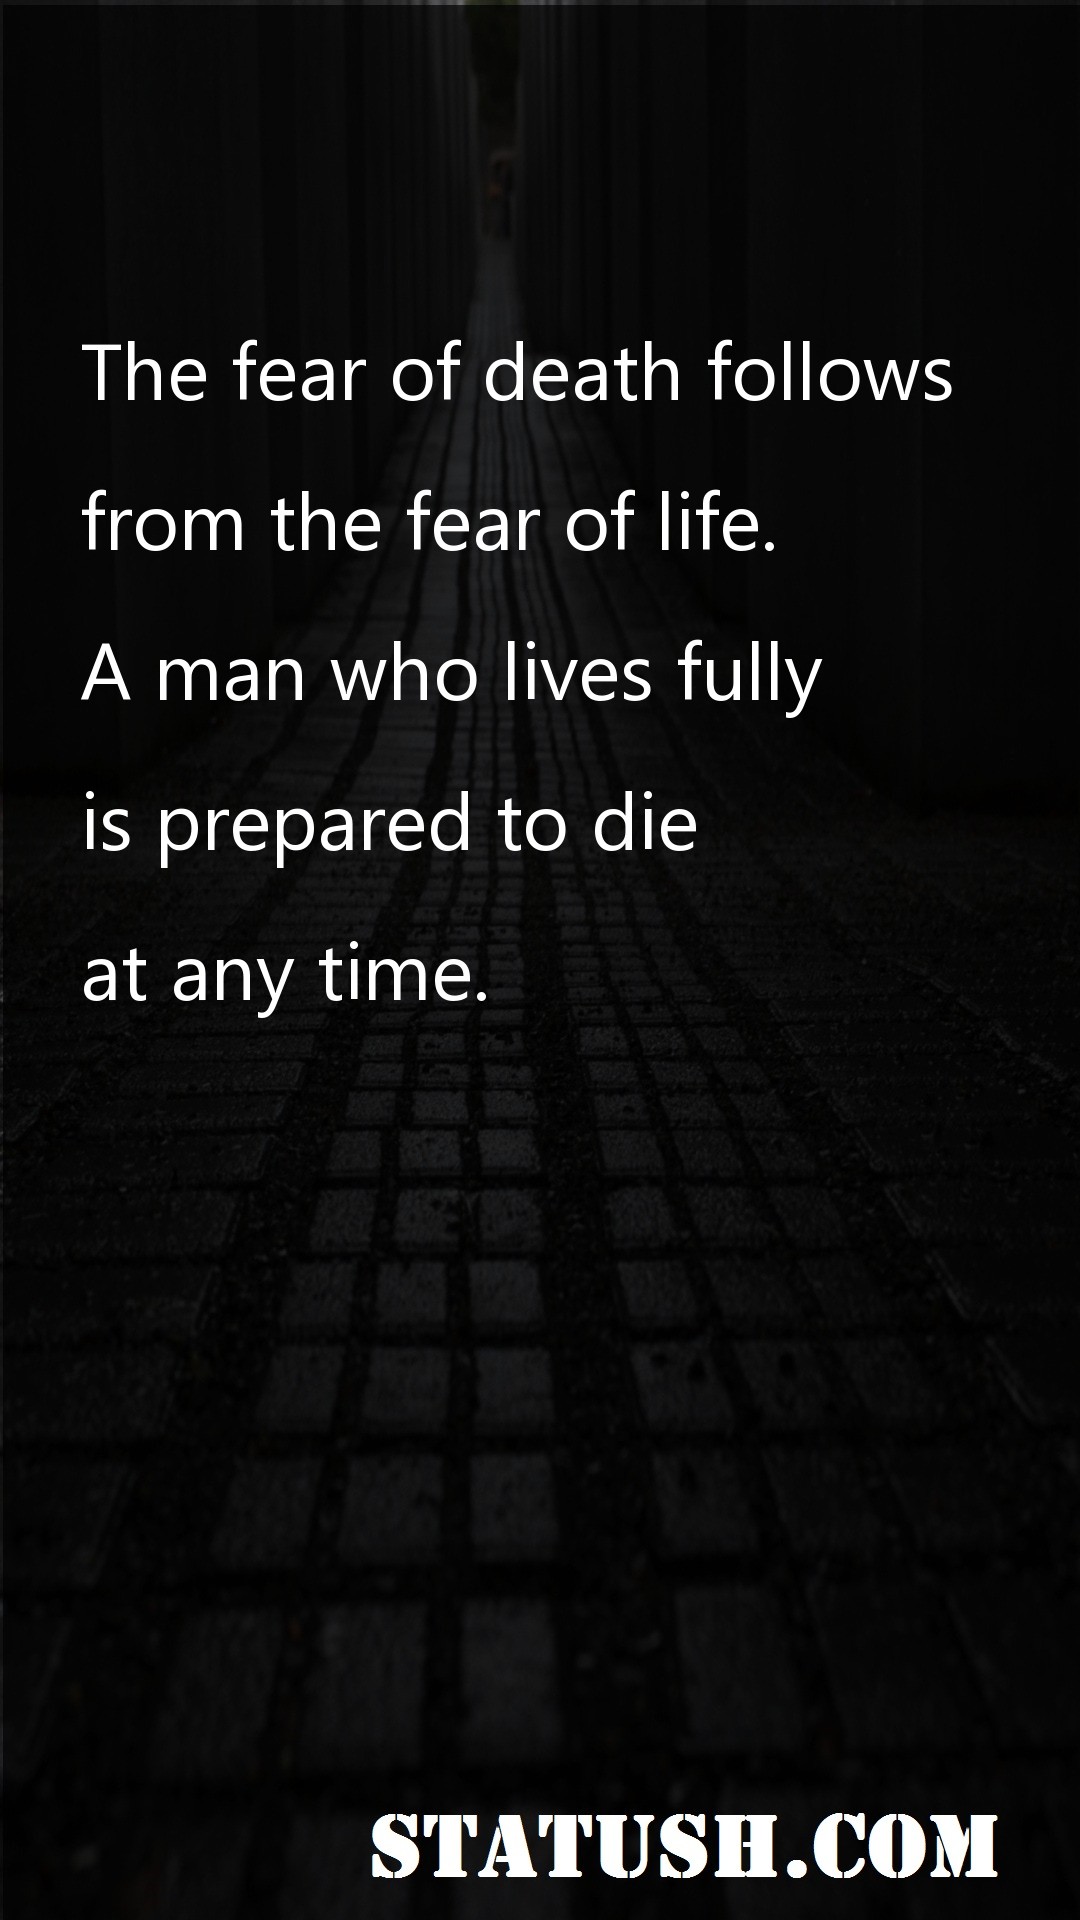 The fear of death follows